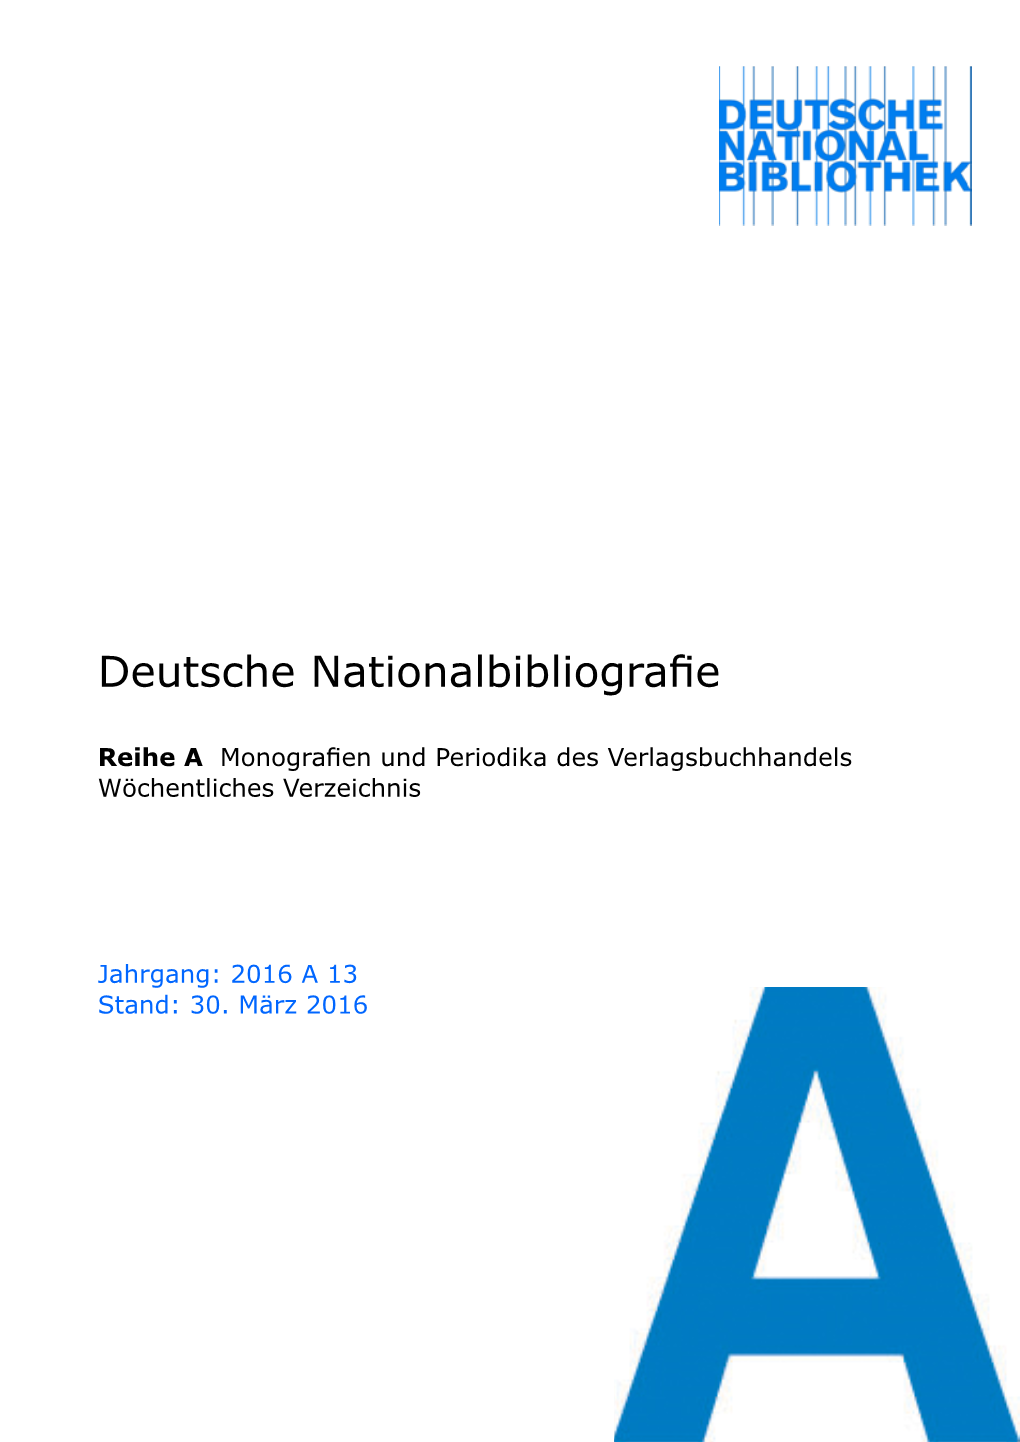 Deutsche Nationalbibliografie 2016 a 13